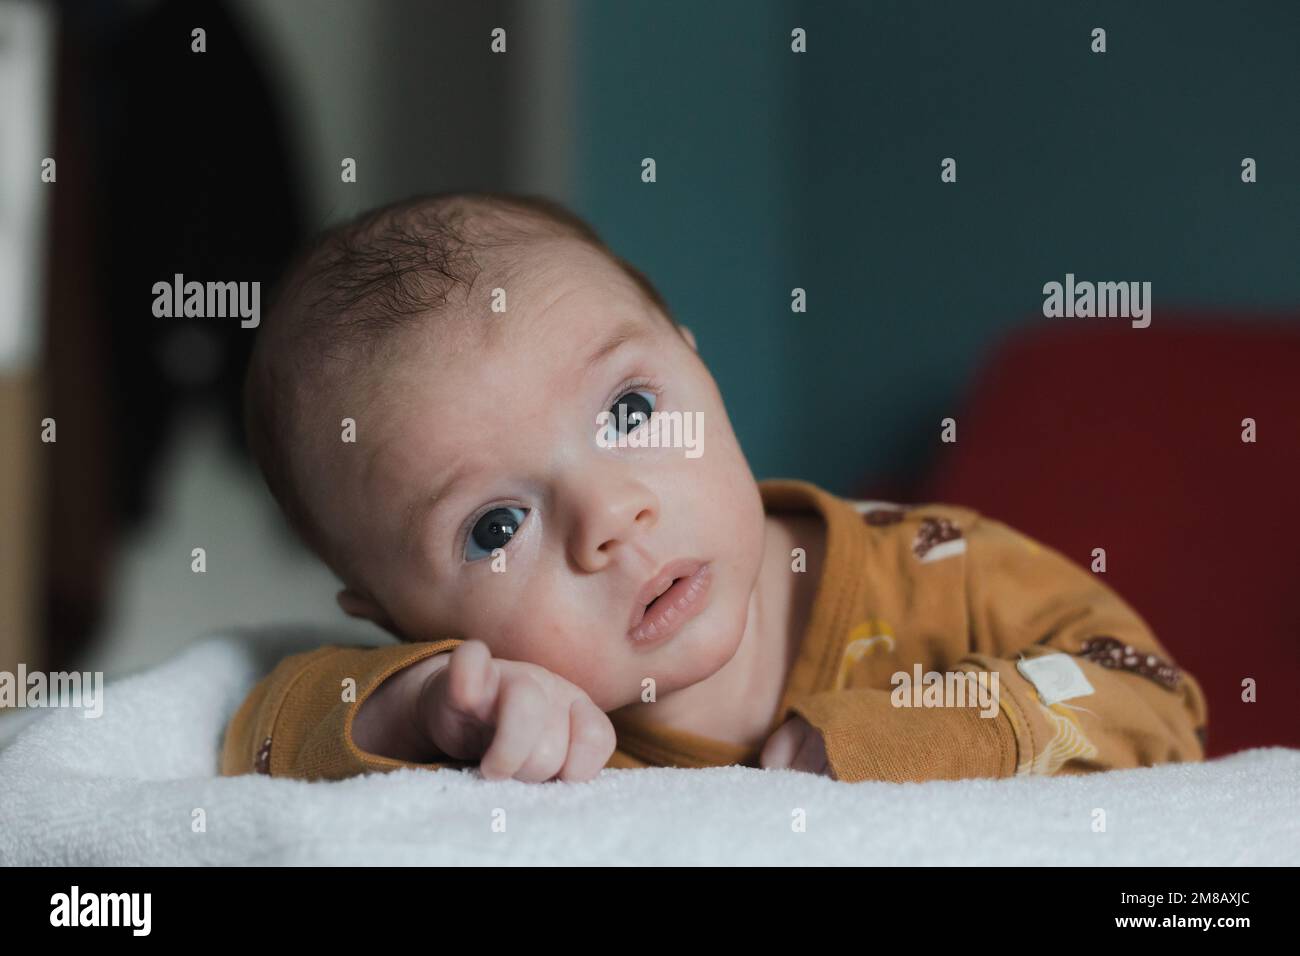 Süßer kleiner Junge im Alter von 3 bis 6 Monaten, der auf dem Bauch liegt und mit einem ernsten Gesichtsausdruck in die Kamera schaut Stockfoto